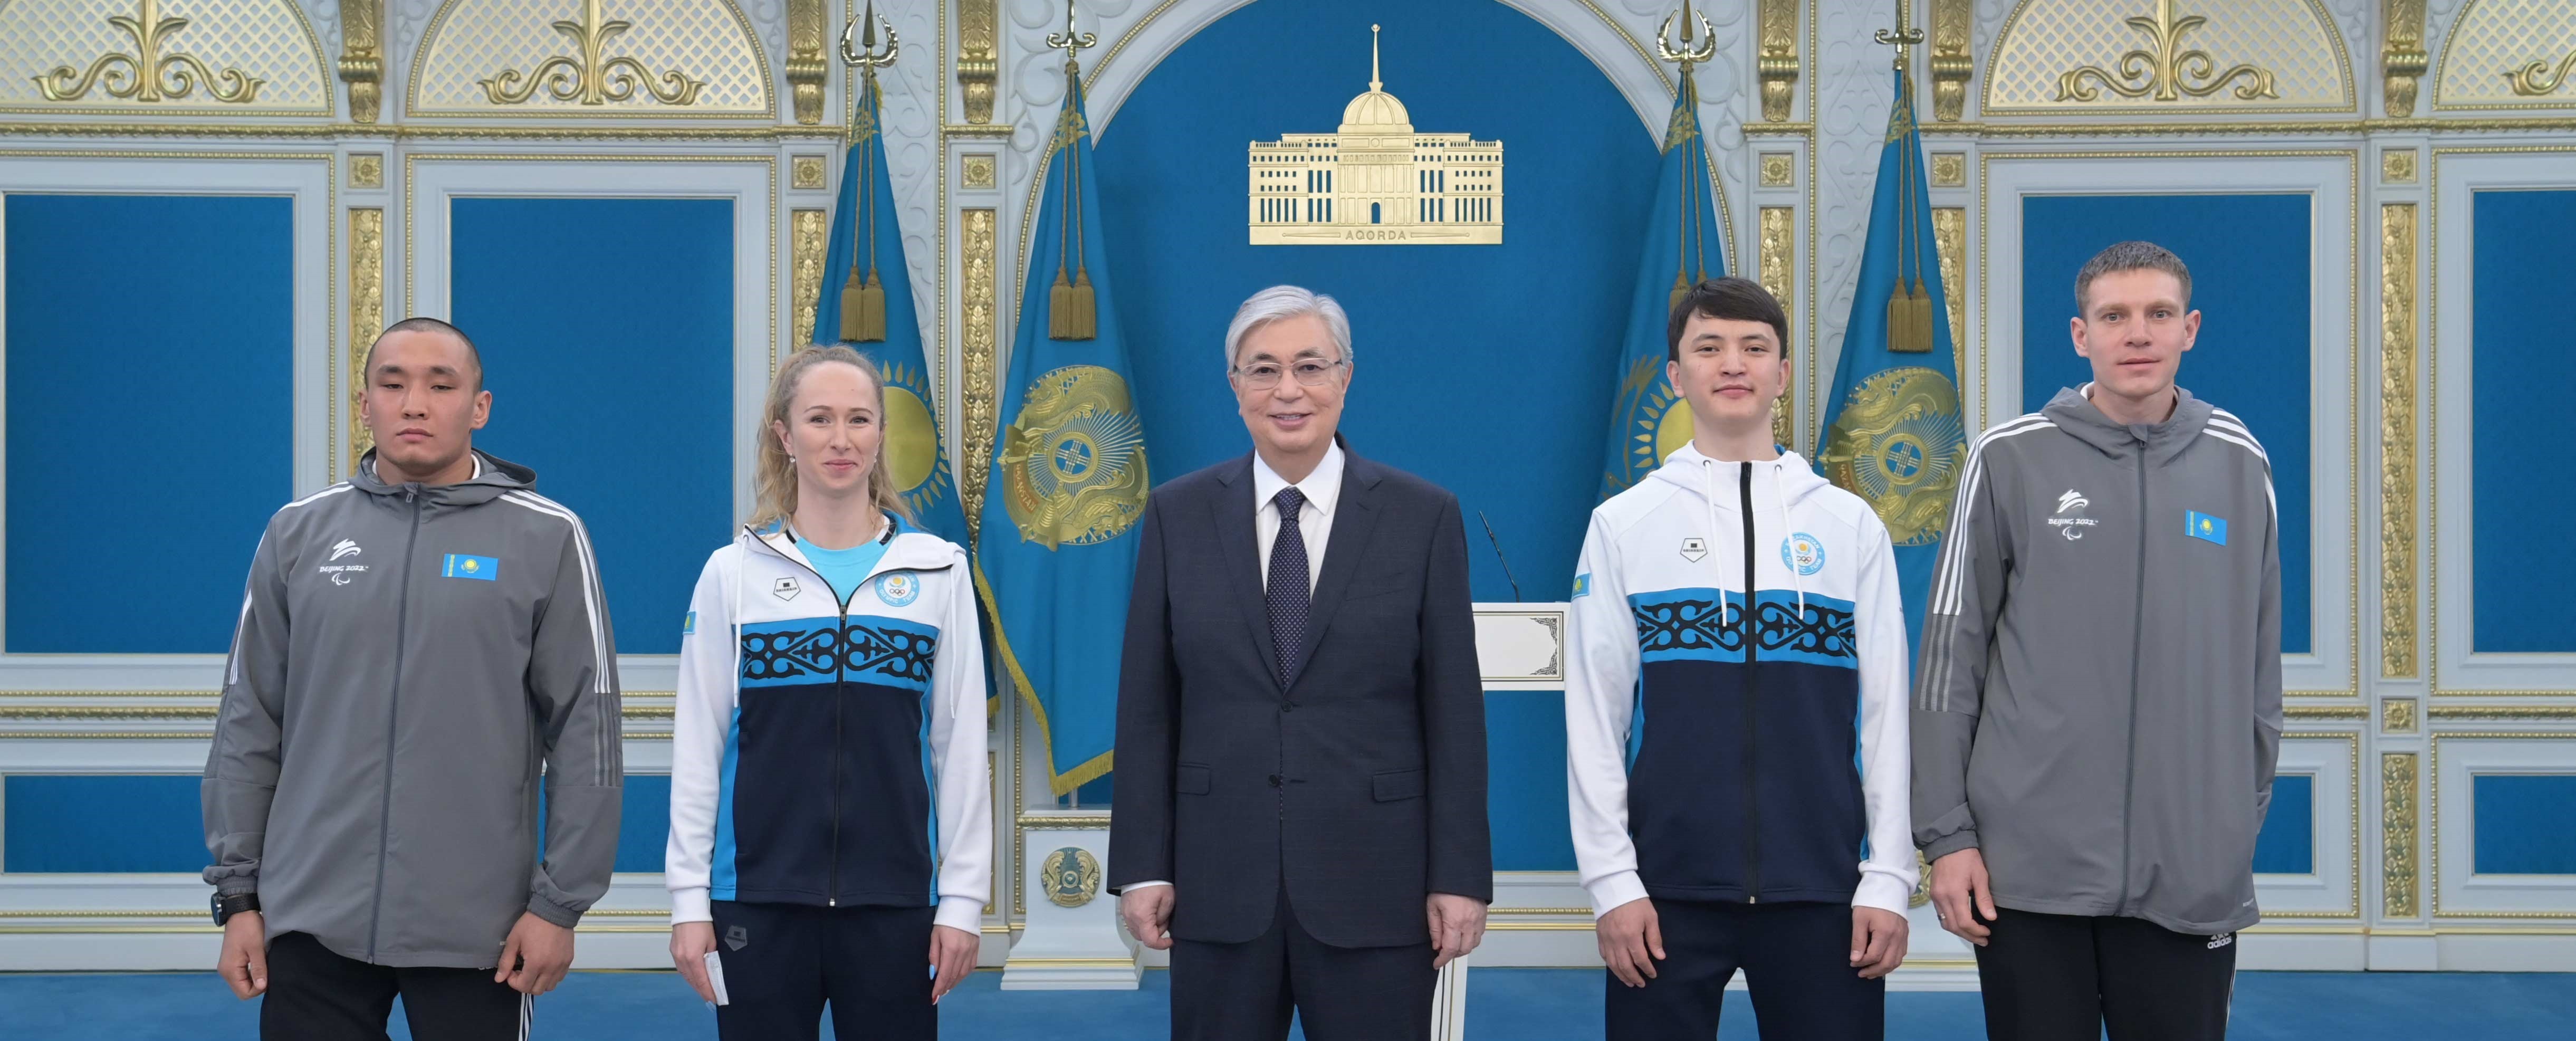 Касым-Жомарт Токаев провел встречу с членами национальных Олимпийской и Паралимпийской сборных Казахстана